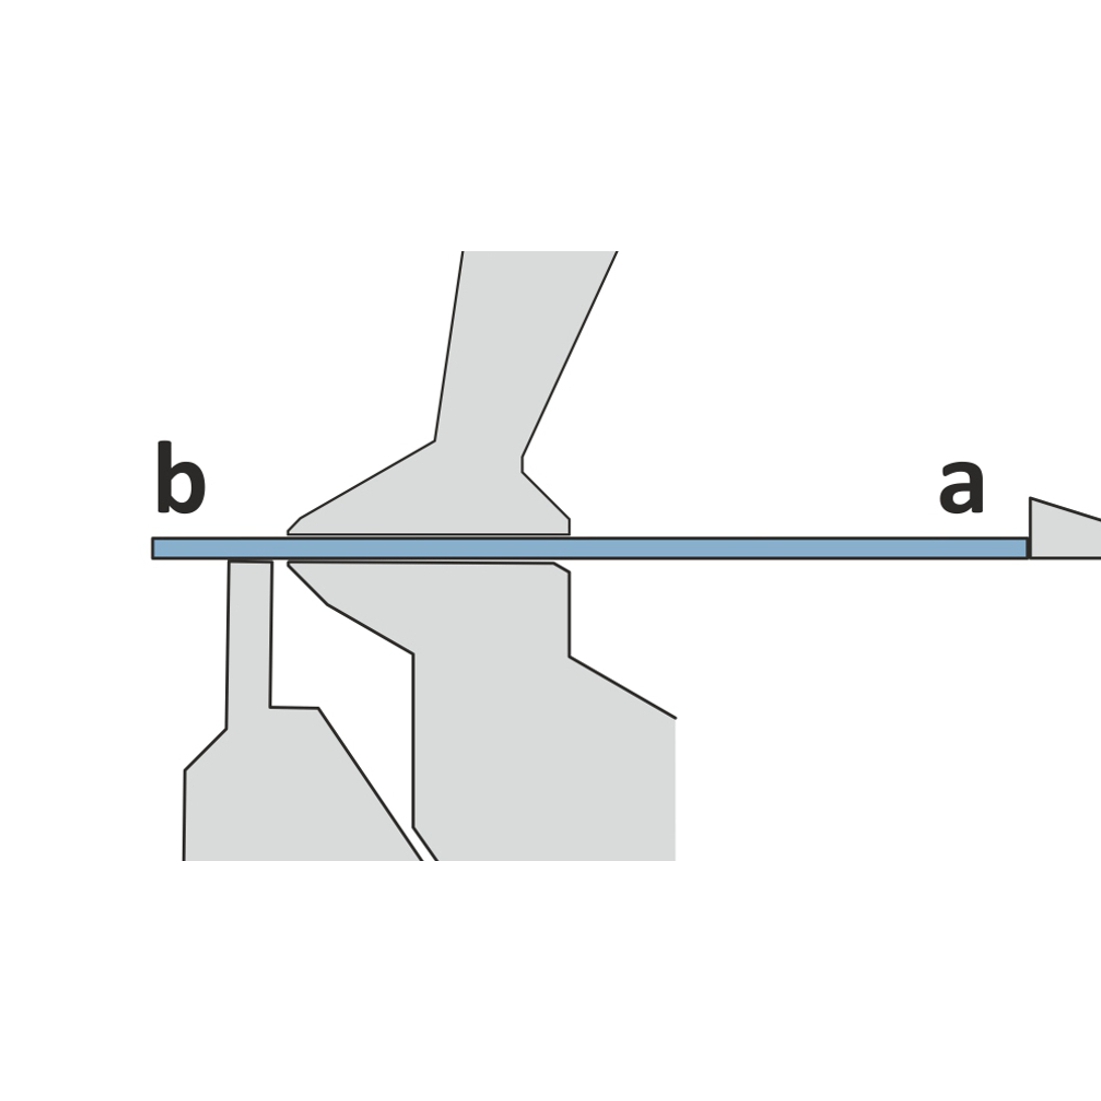 Anschlagen Seite a. Seite b ragt zwischen Oberwange und Unterwange heraus.